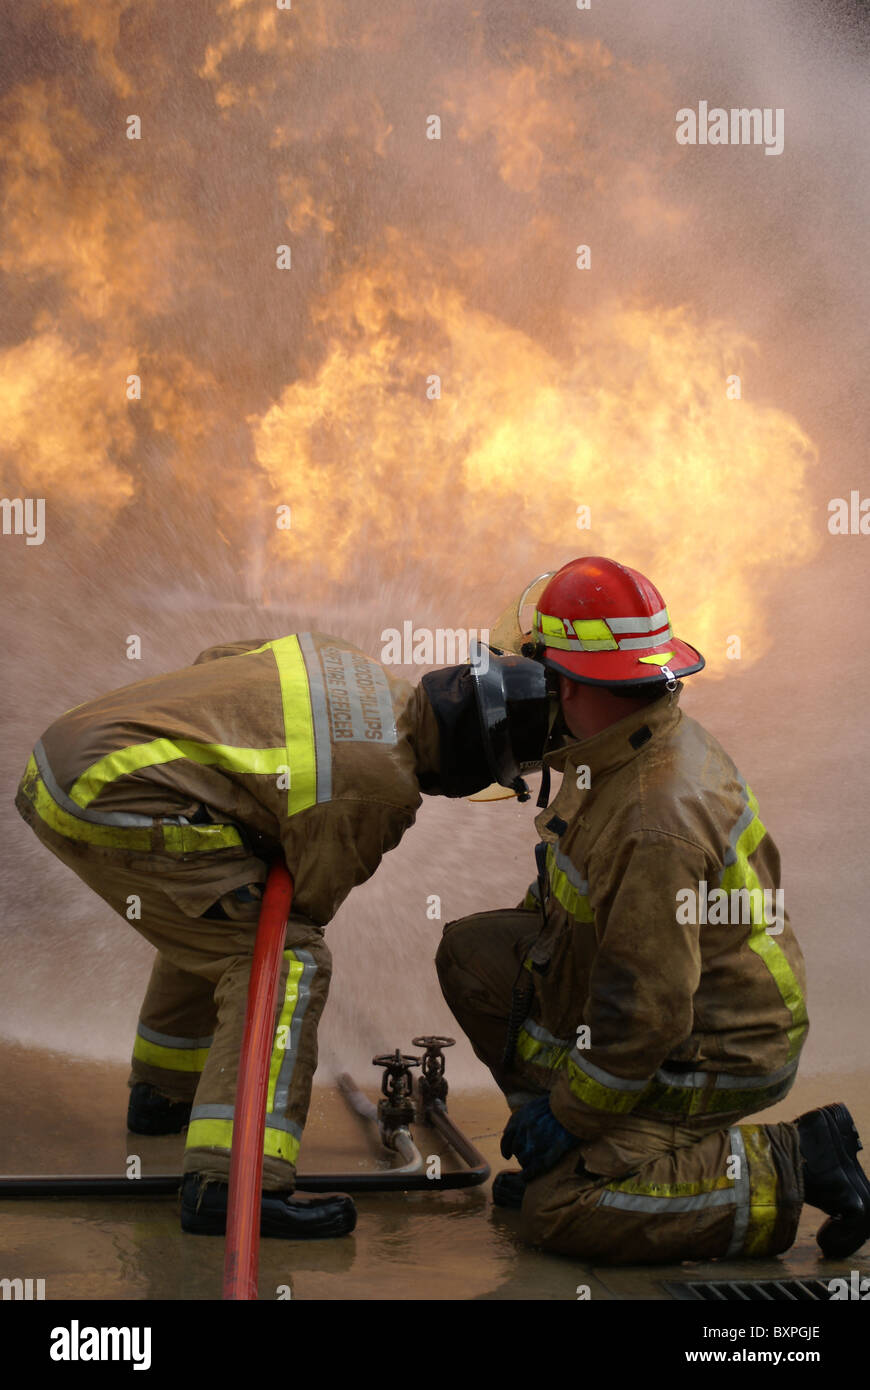 Les pompiers la lutte contre l'incendie du bâtiment, inferno Banque D'Images